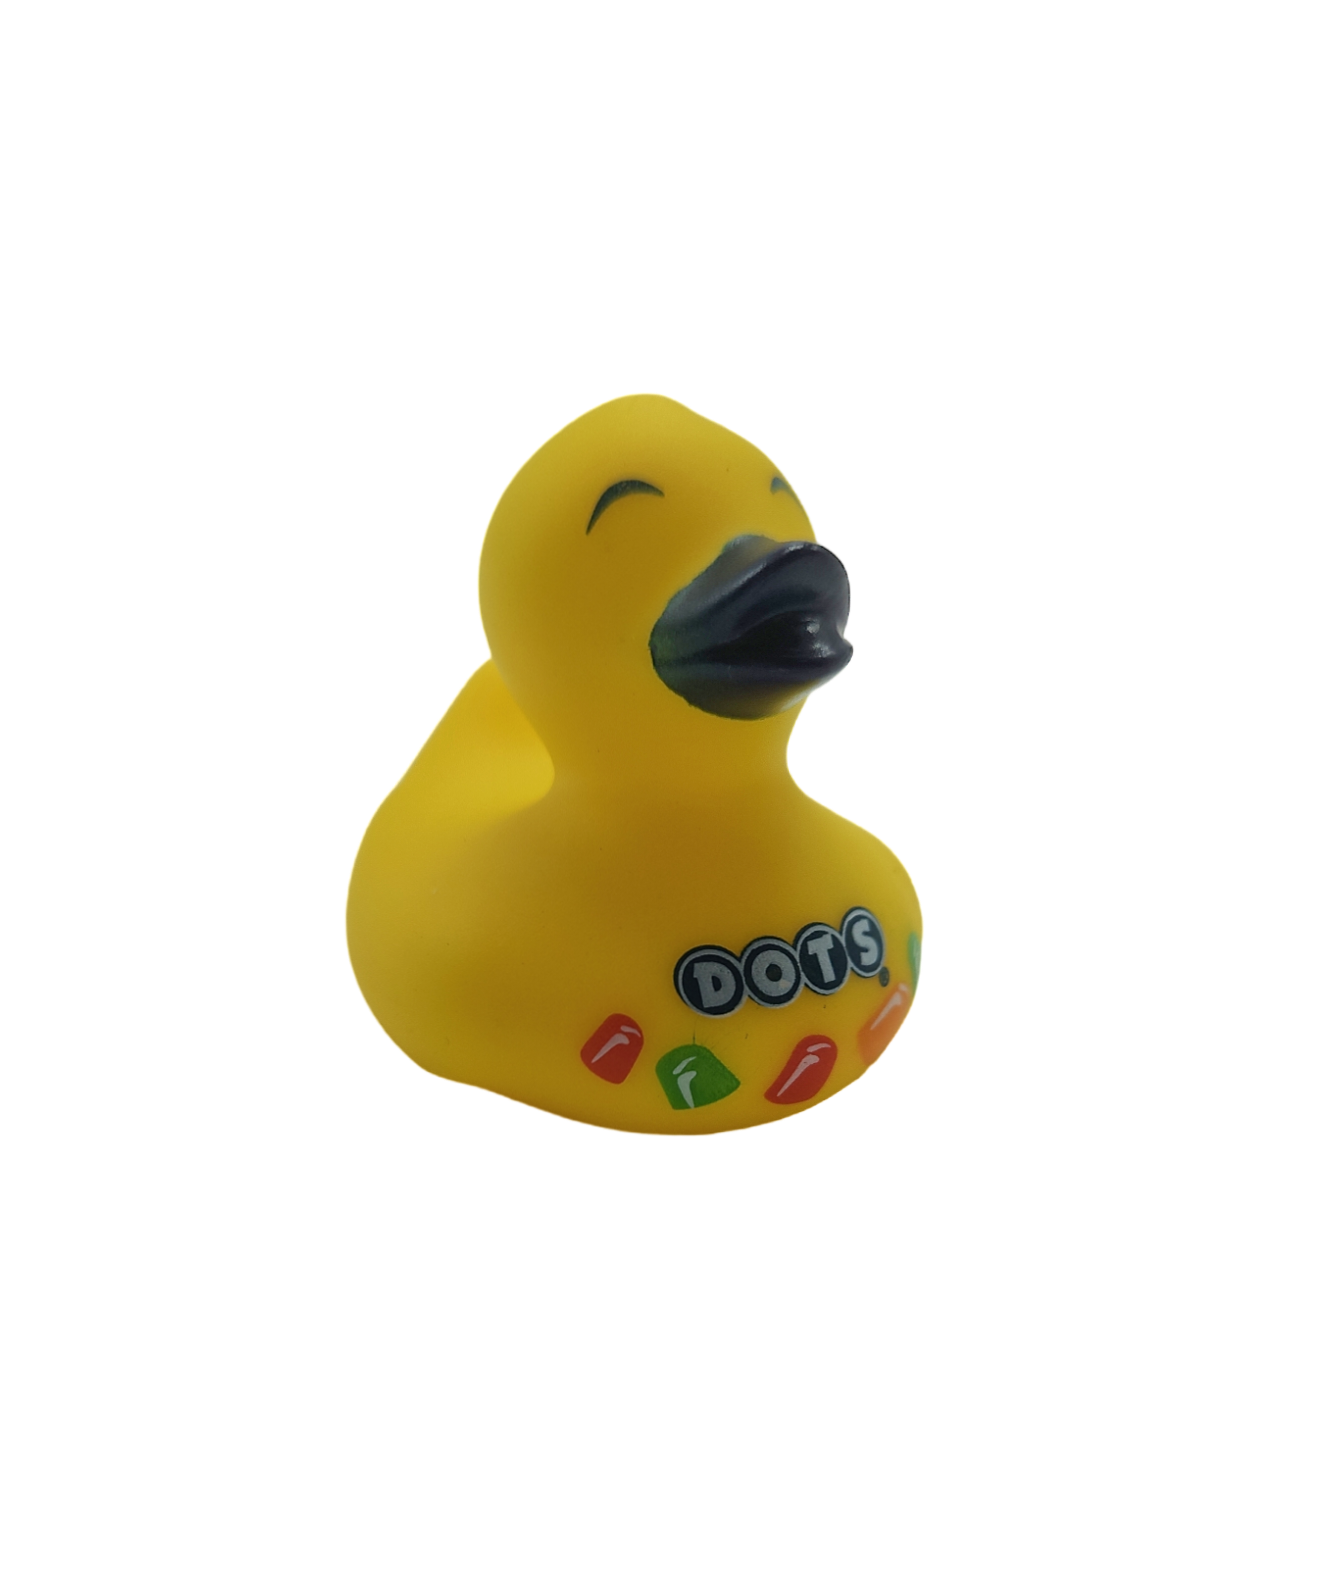 10 Dots Candy Ducks - 2" Rubber Ducks